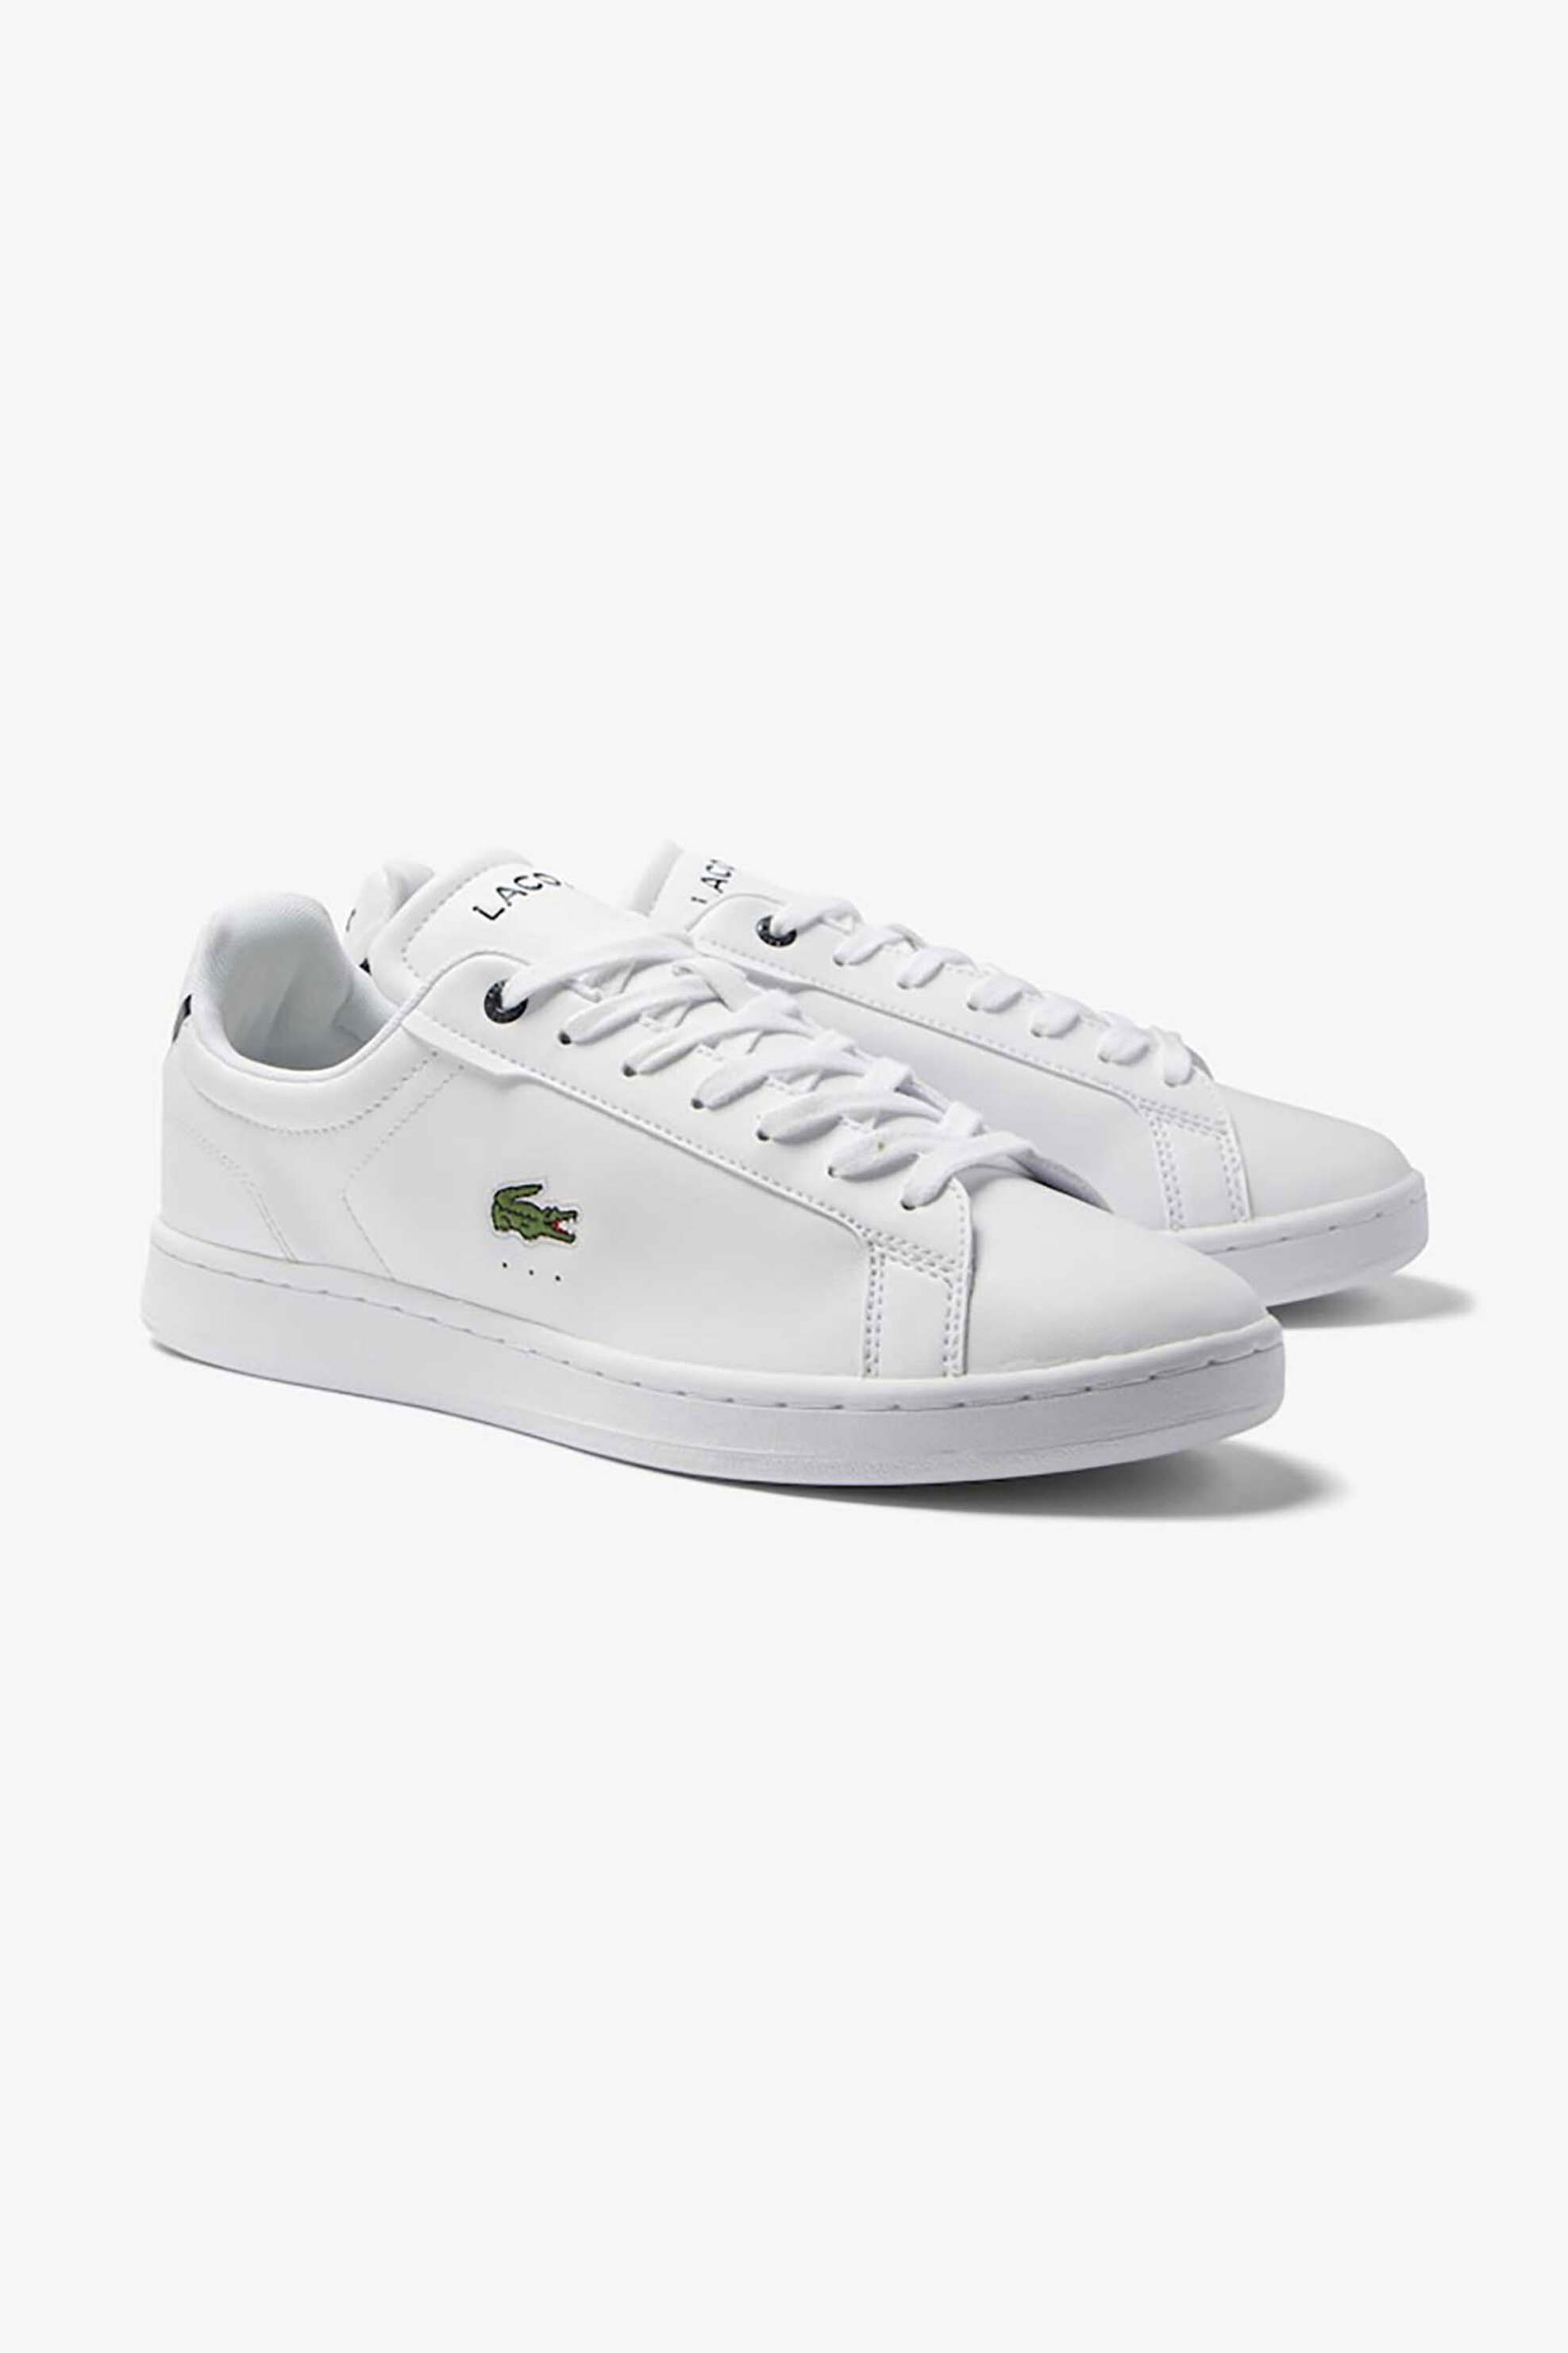 Ανδρική Μόδα > Ανδρικά Παπούτσια > Ανδρικά Sneakers Lacoste ανδρικά sneakers μονόχρωμα με κεντημένο λογότυπο στο πλάι "Carnaby Pro BL" - 45SMA0110042 Λευκό